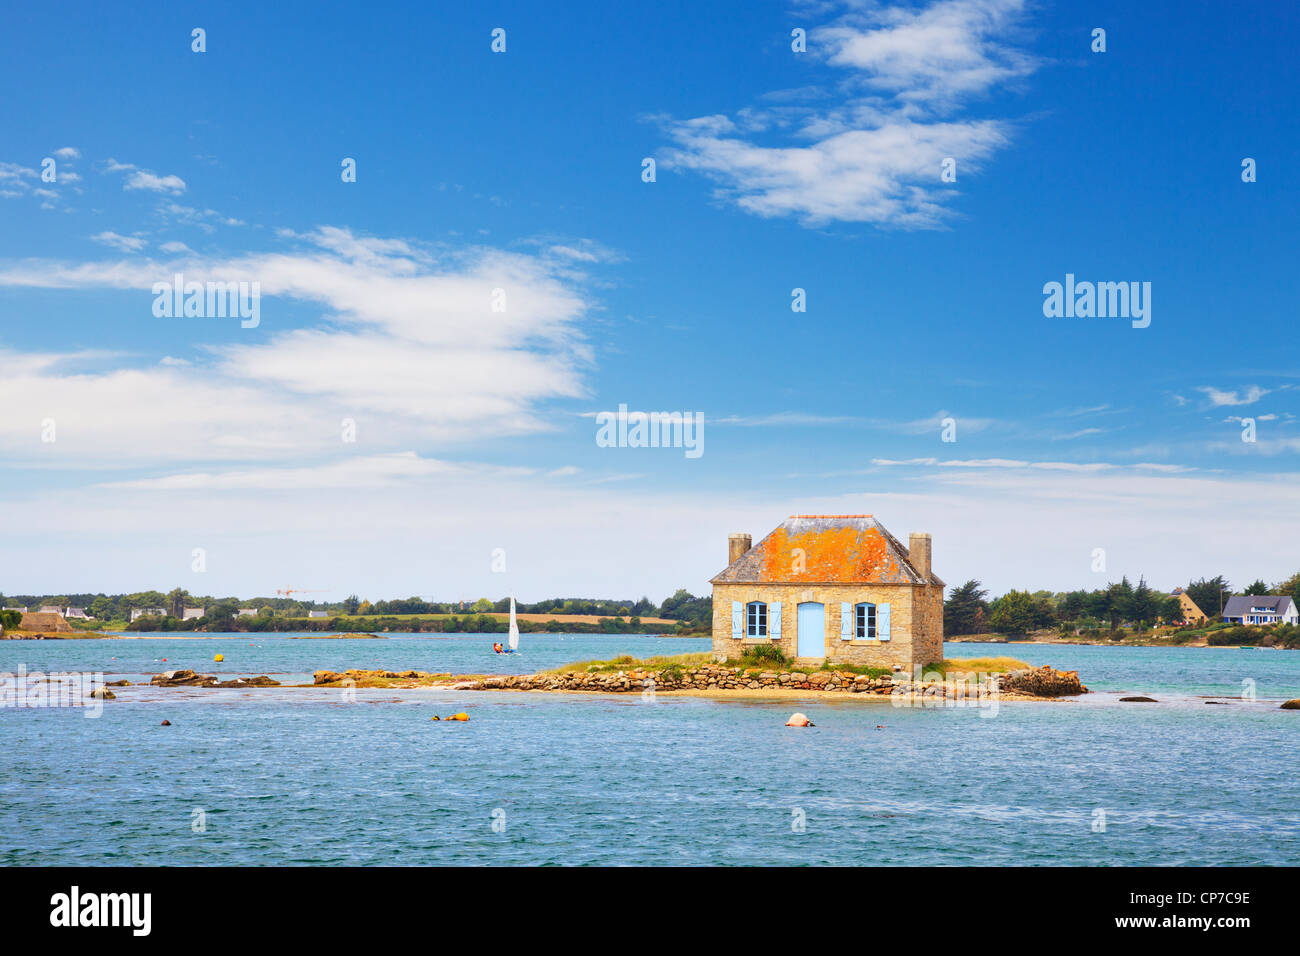 Una piccola isola con un cottage su di essa nel fiume Etel, Ile de Saint-Cado, Brittany, Francia. Foto Stock